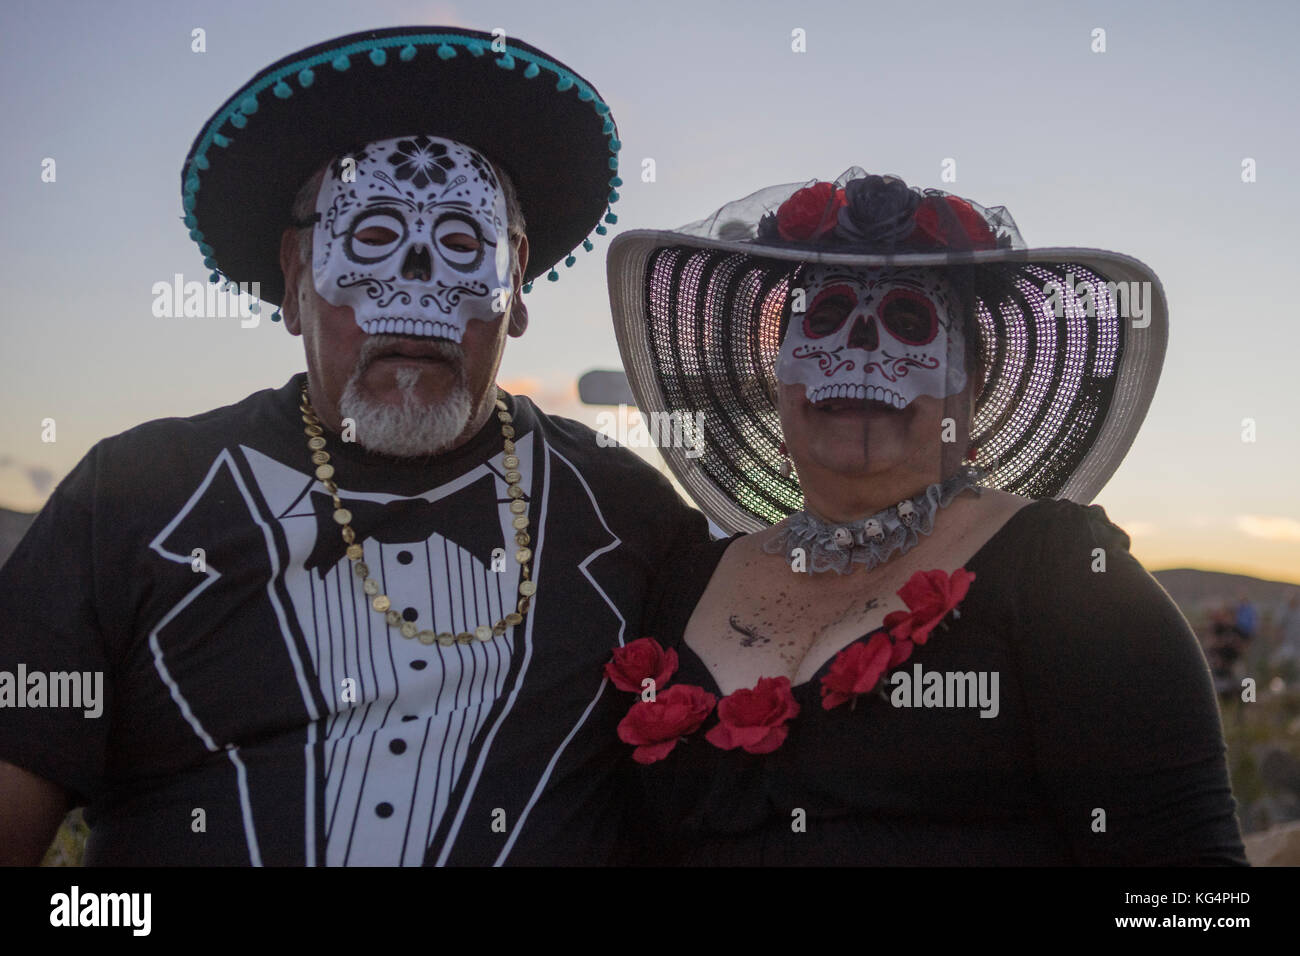 Célébration de dia de los muertos, la fête des morts, dans la région de Terlingua, une ancienne ville fantôme istuated sur la frontière avec le Mexique à l'ouest jusqu'au Texas. Banque D'Images